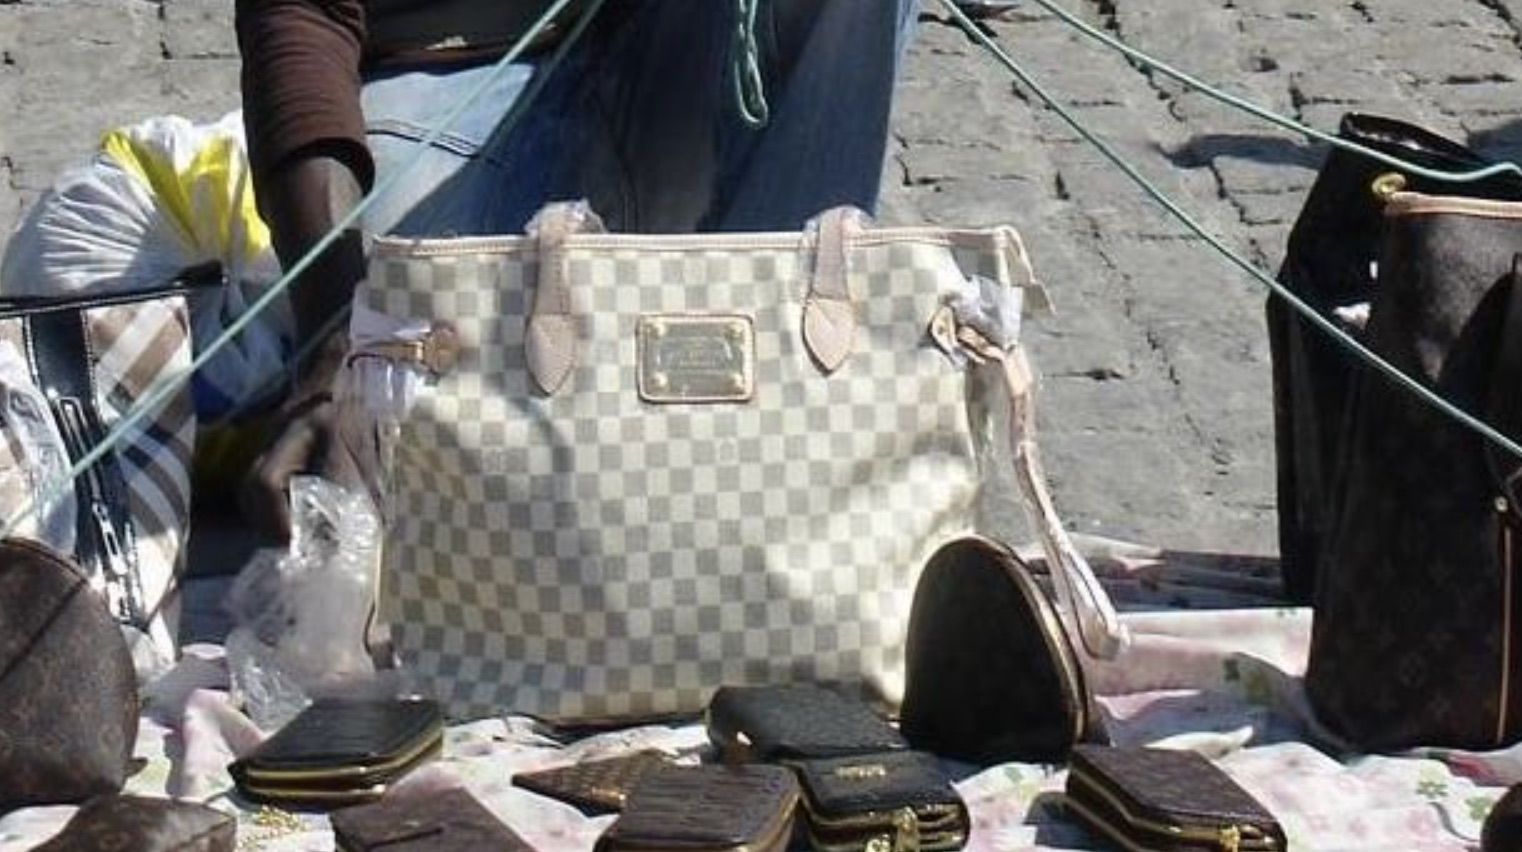 Un mantero vendiendo productos falsificados, en una imagen de archivo.